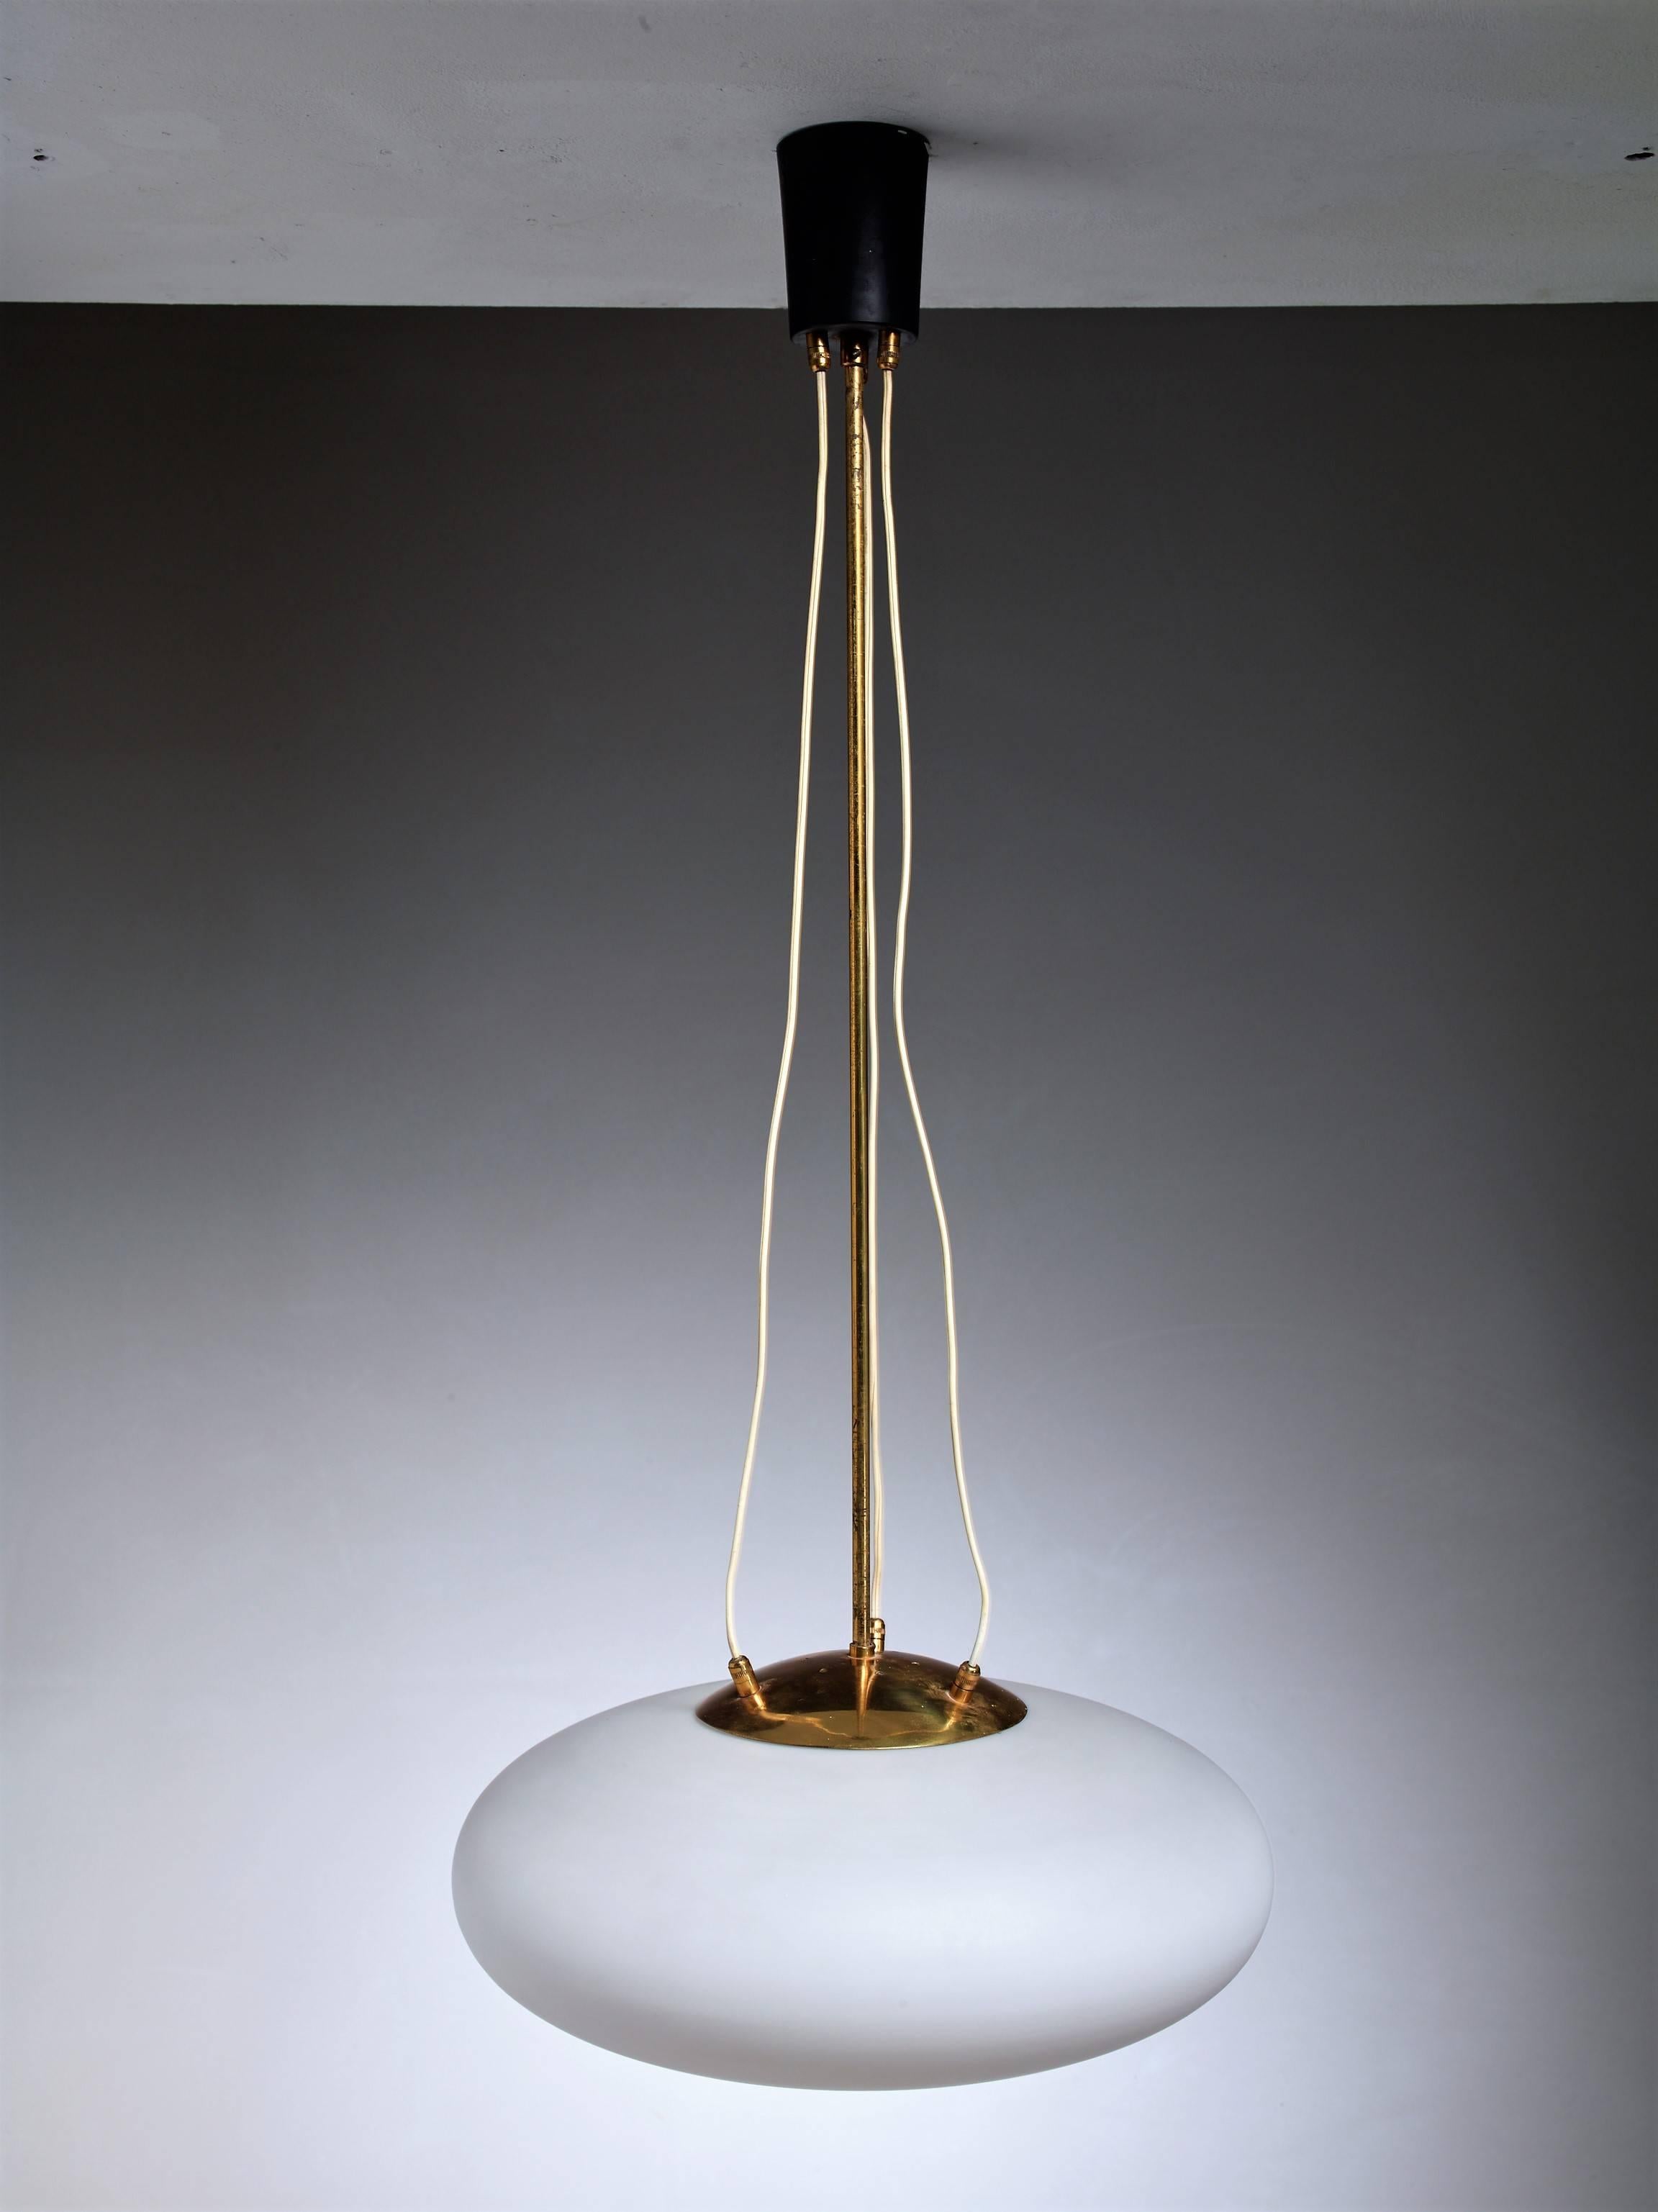 An Italian pill-shaped opaline glass pendant lamp hanging from a brass stem.